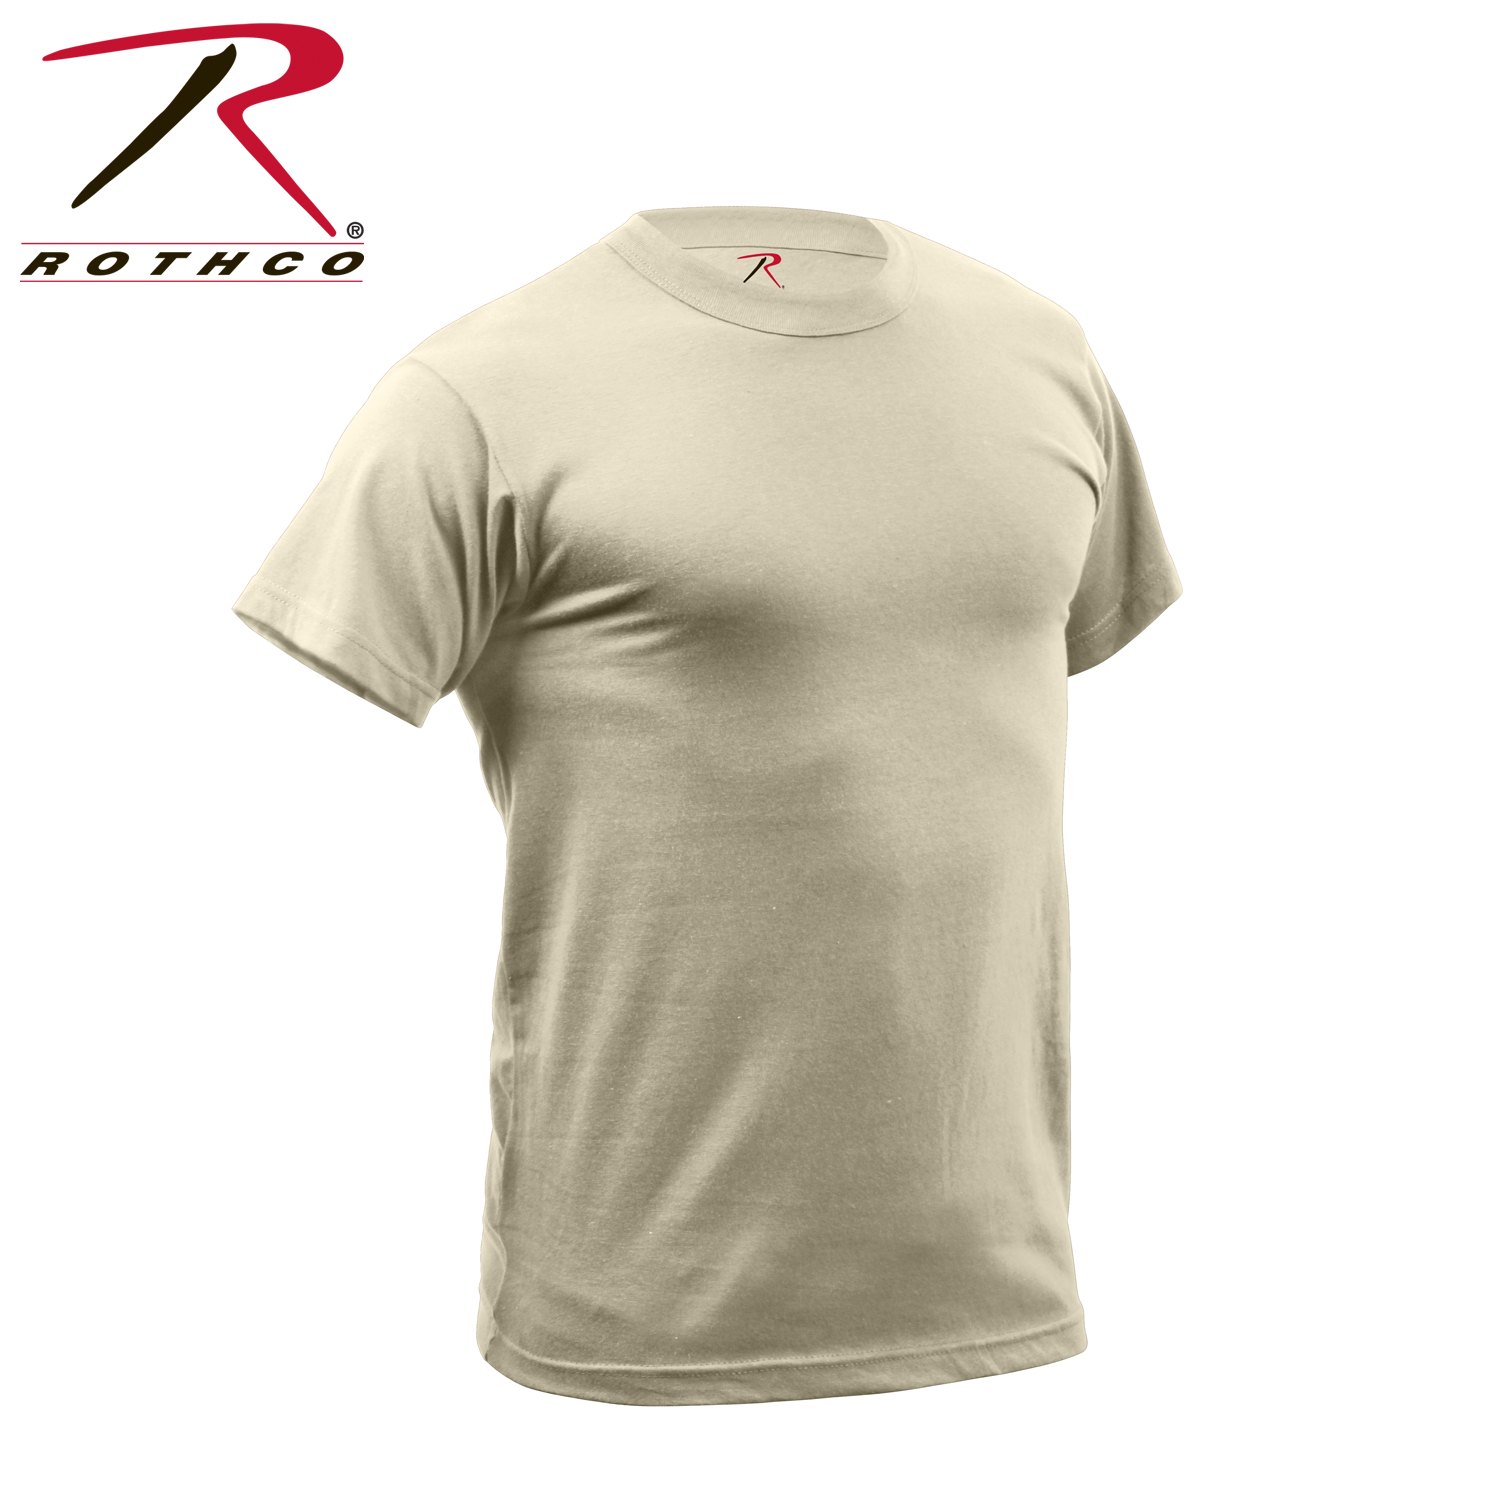 Rothco Desert Sand Quick Dry Moisture Wicking Short Sleeve T-Shirt